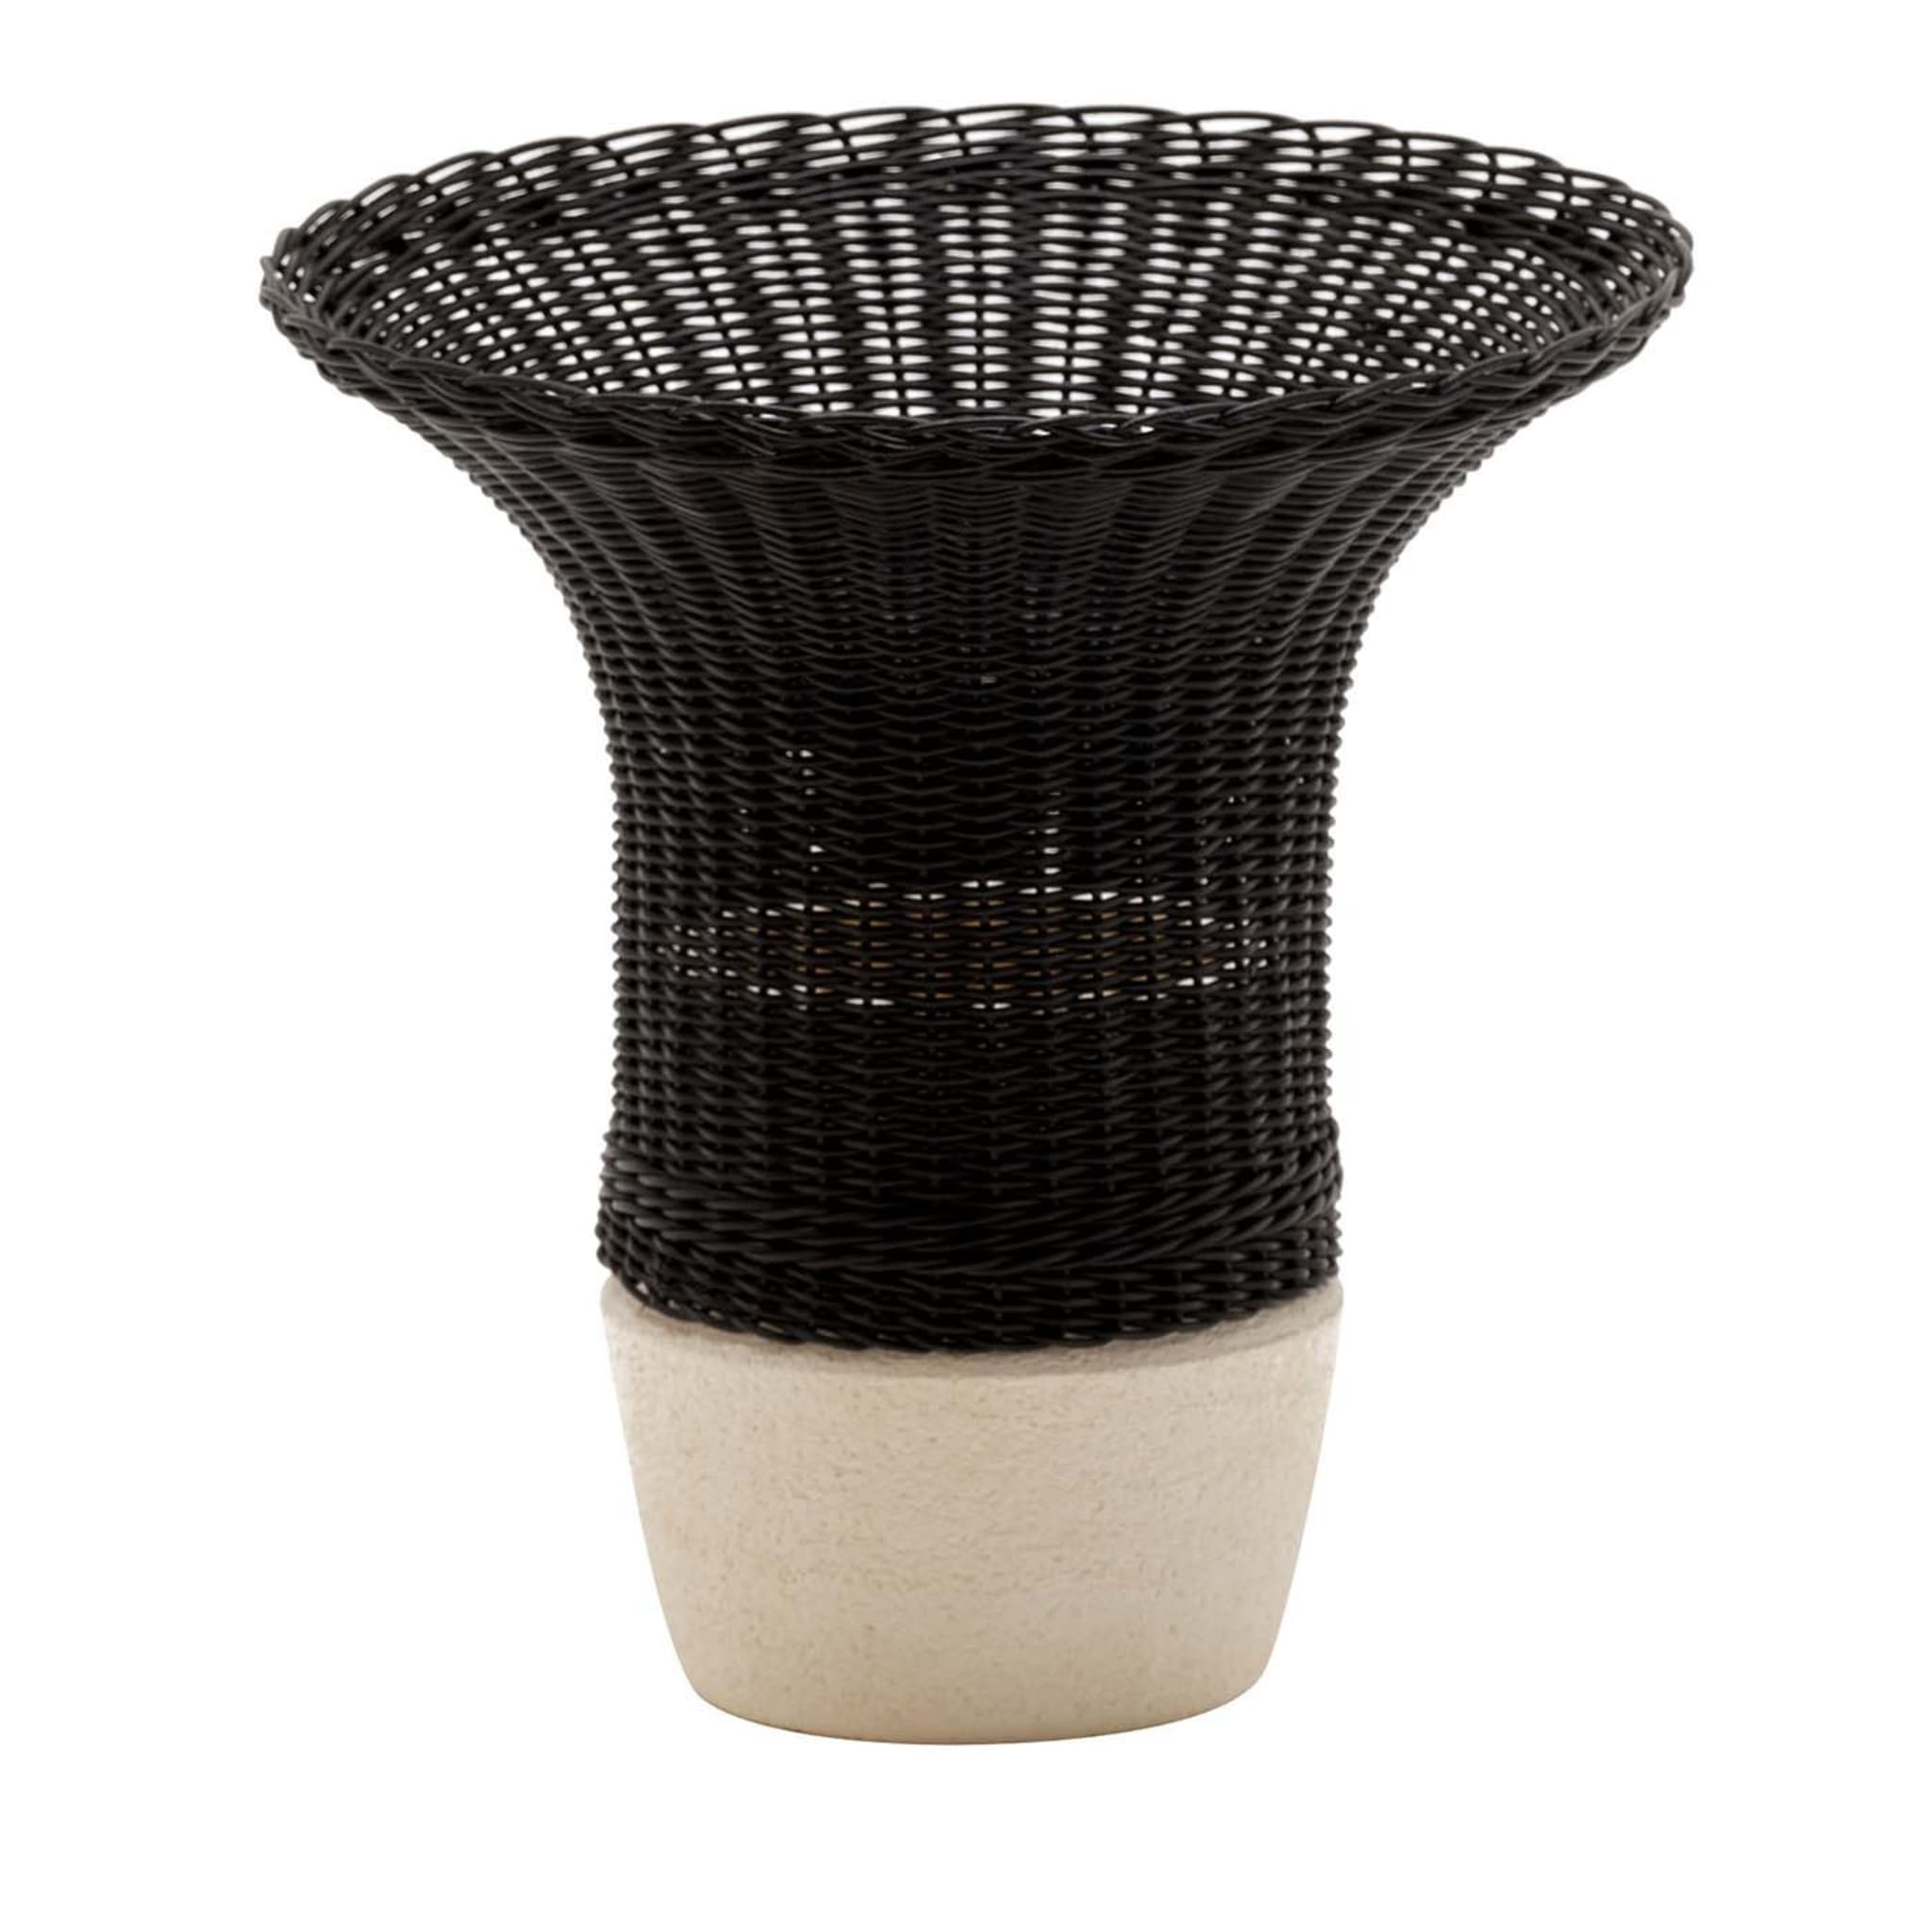 Nodo Wicker Black Vase by Intreccio Lab - Main view